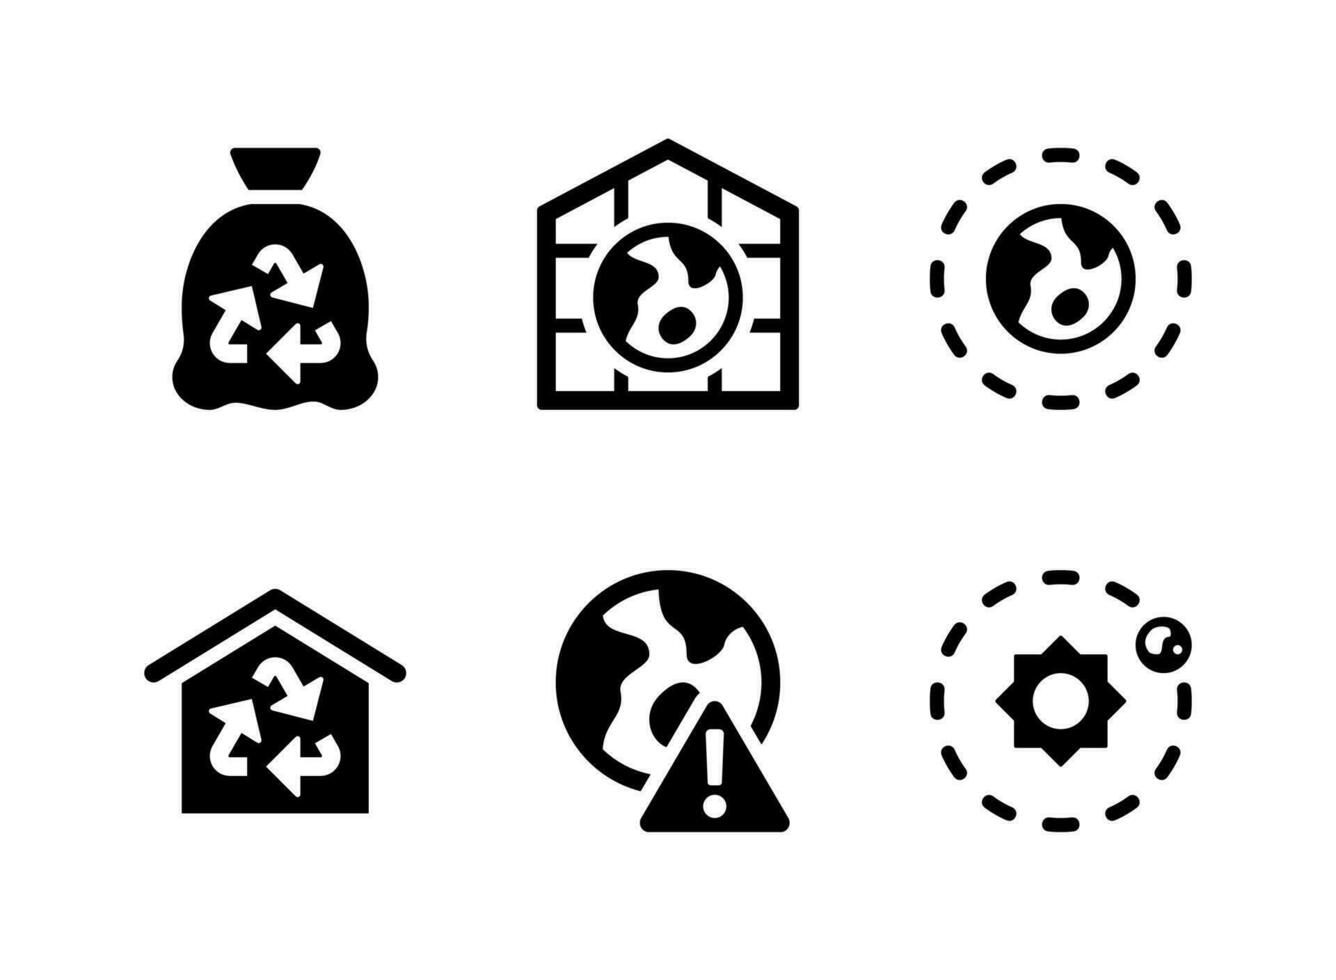 conjunto simples de ícones sólidos vetoriais relacionados às mudanças climáticas. contém ícones como saco plástico, efeito estufa, atmosfera e muito mais. vetor